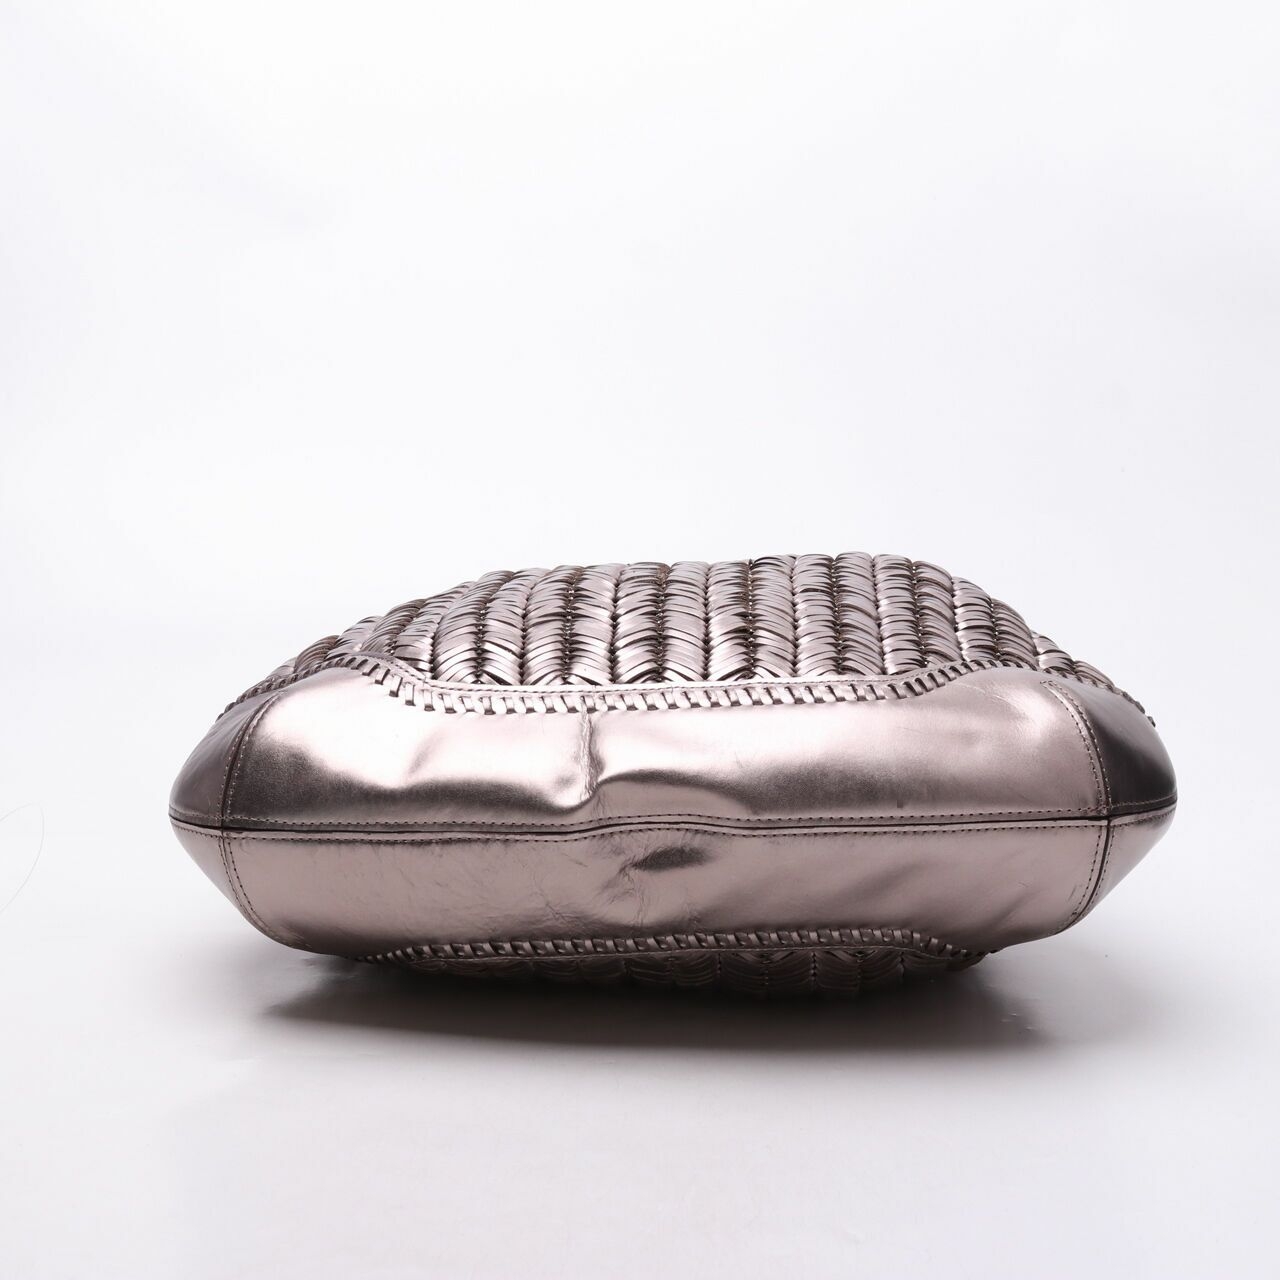 Anya Hindmarch Silver Handbag